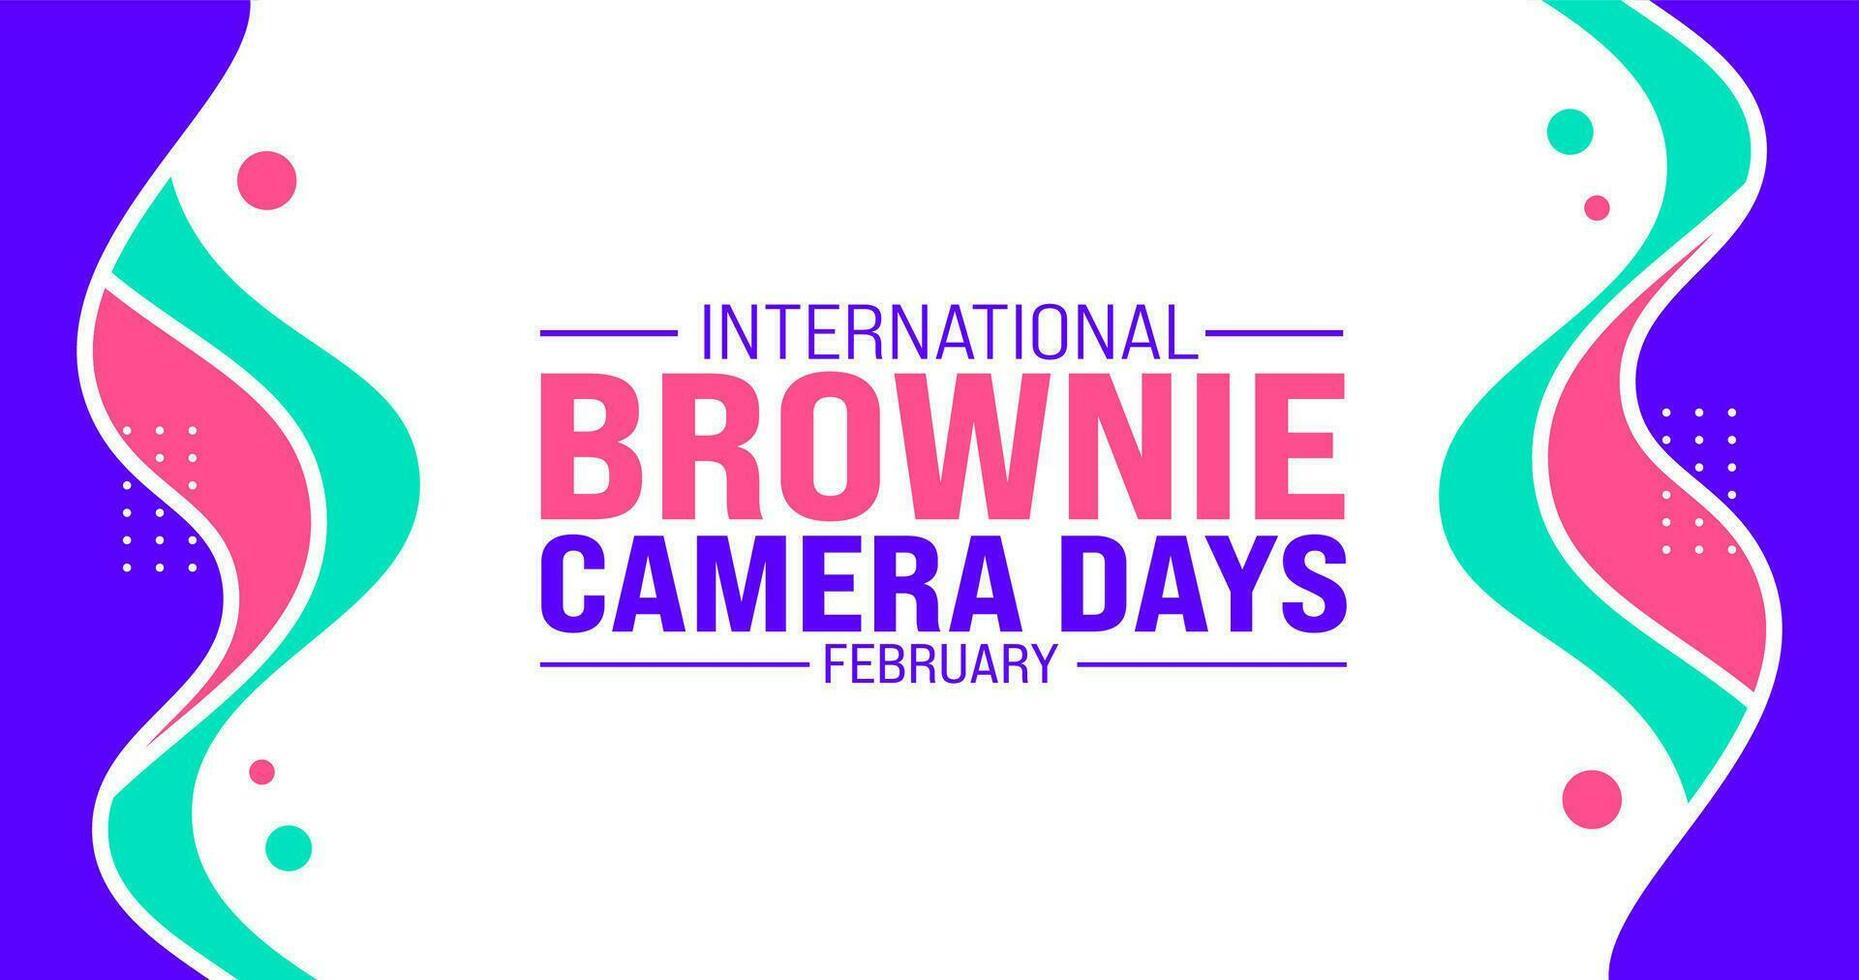 februari is Internationale brownie camera dagen achtergrond sjabloon. vakantie concept. achtergrond, banier, aanplakbiljet, kaart, en poster ontwerp sjabloon met tekst opschrift en standaard- kleur. vector